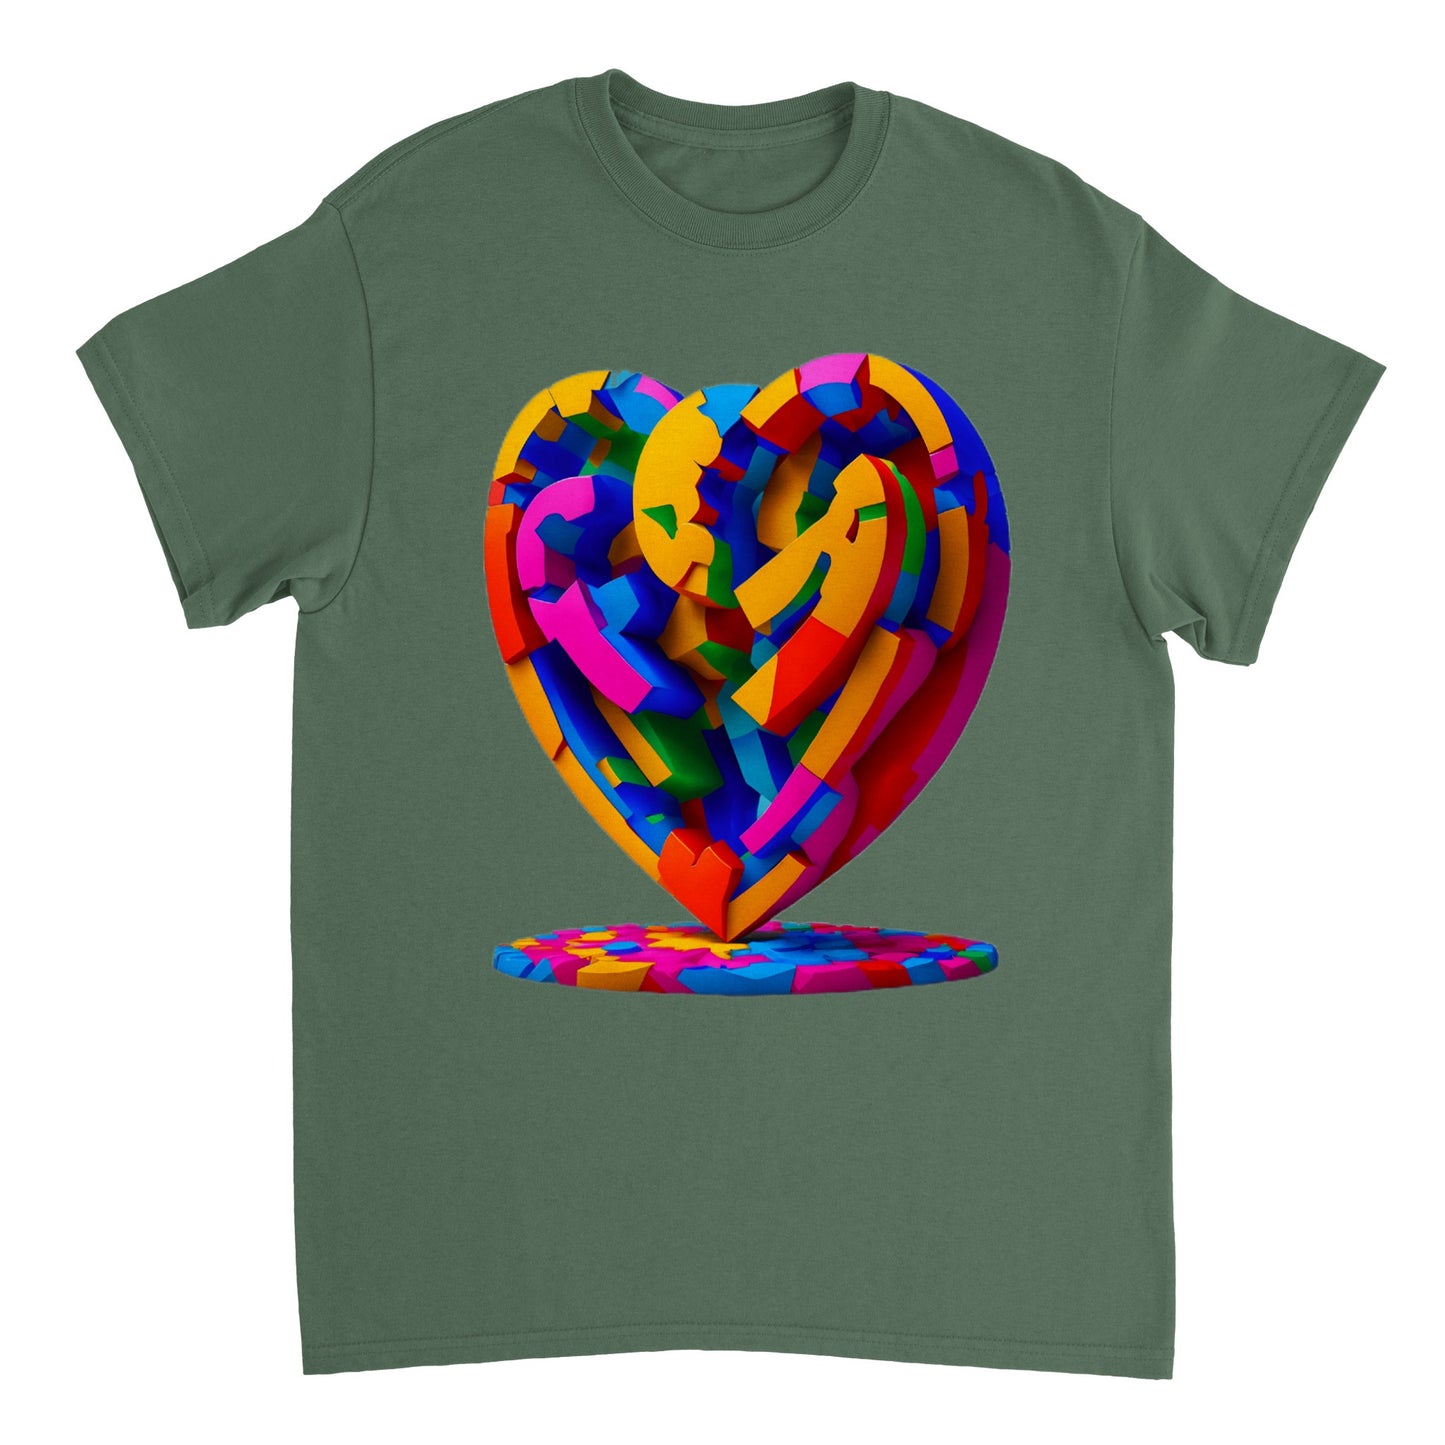 Love Heart - Heavyweight Unisex Crewneck T-shirt 14